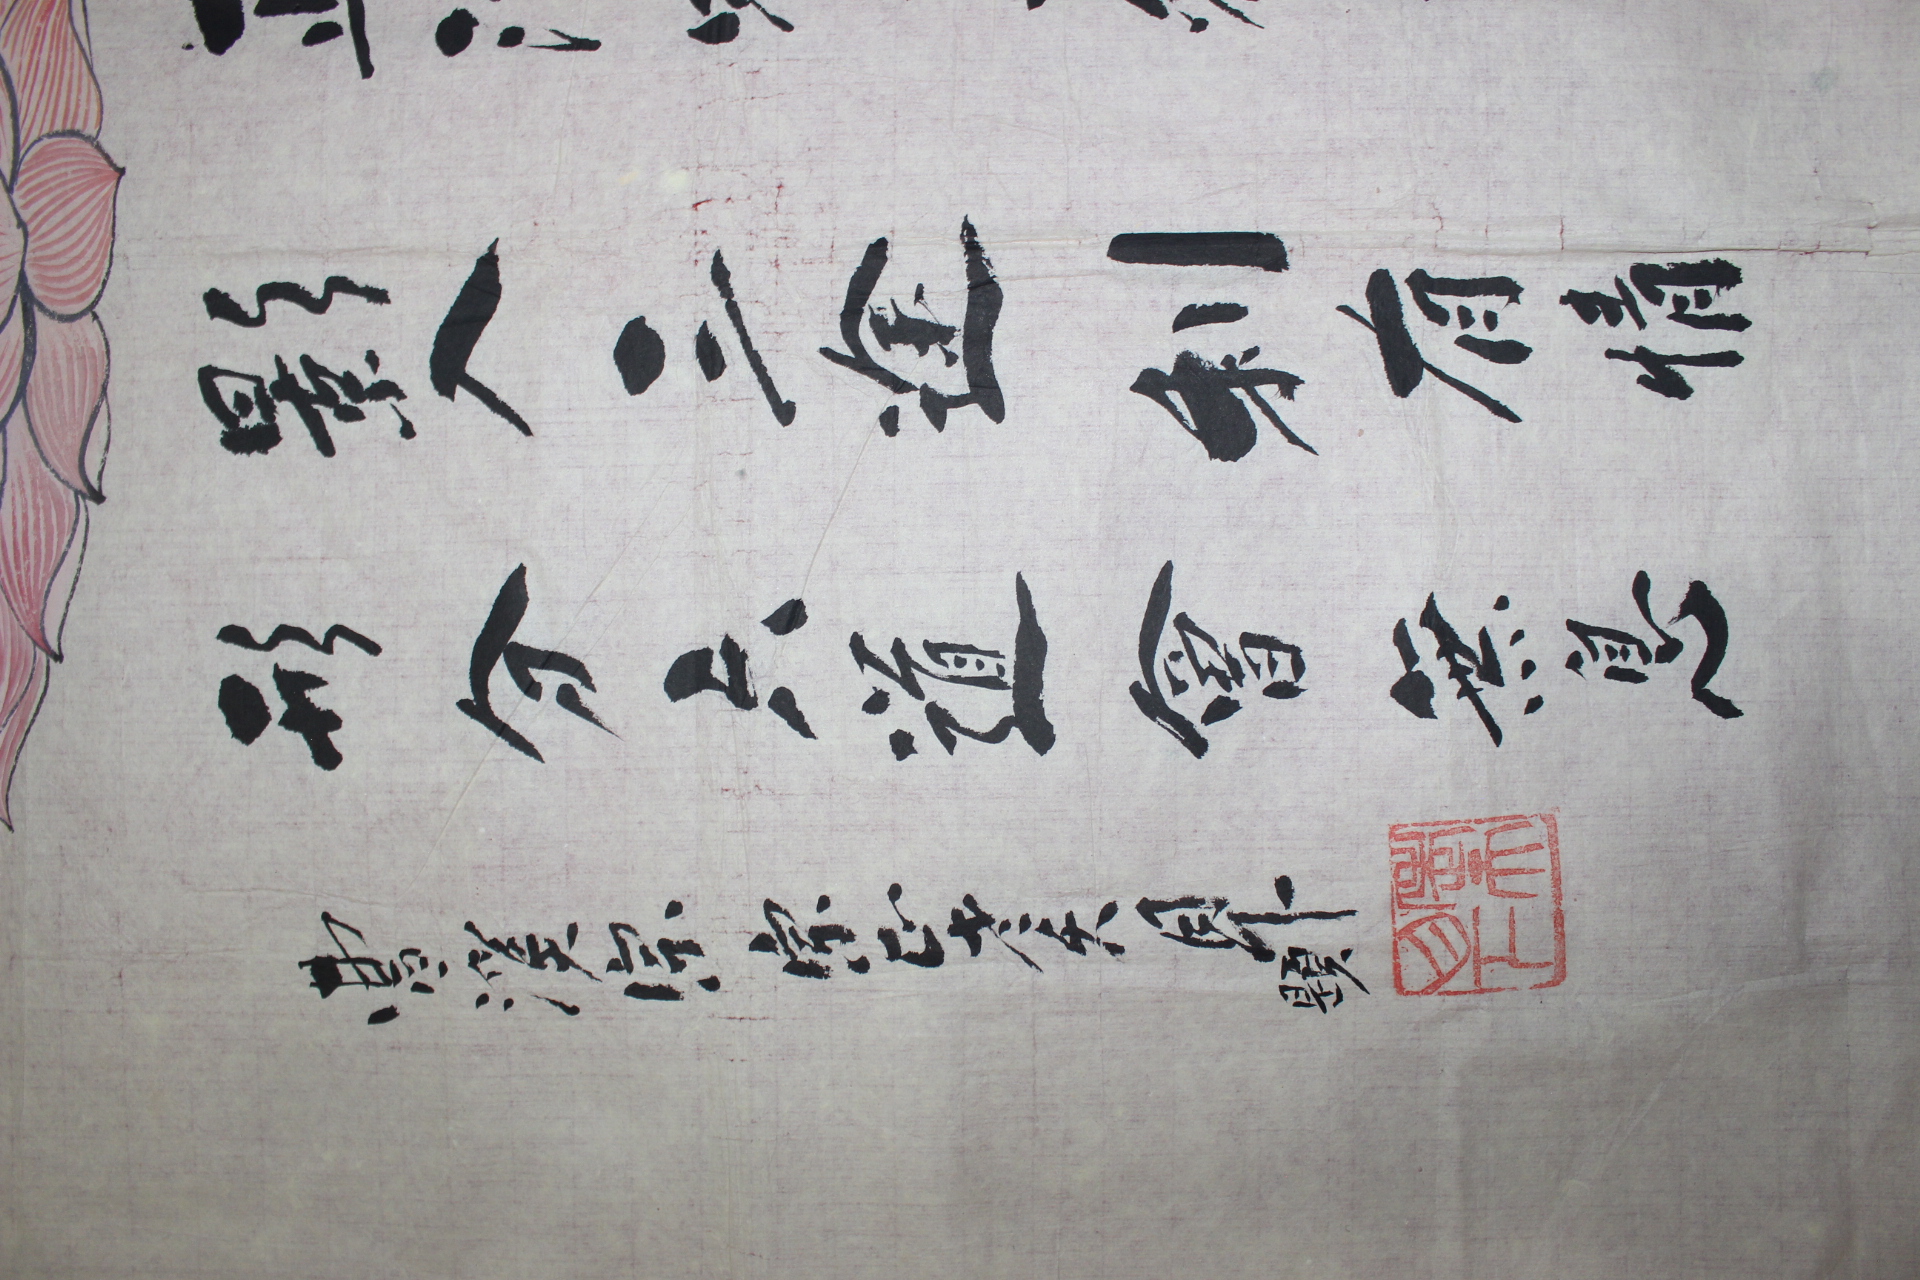 690-조계종 종정 노천당(老天堂) 월하(月下)스님 묵서 비천관음상